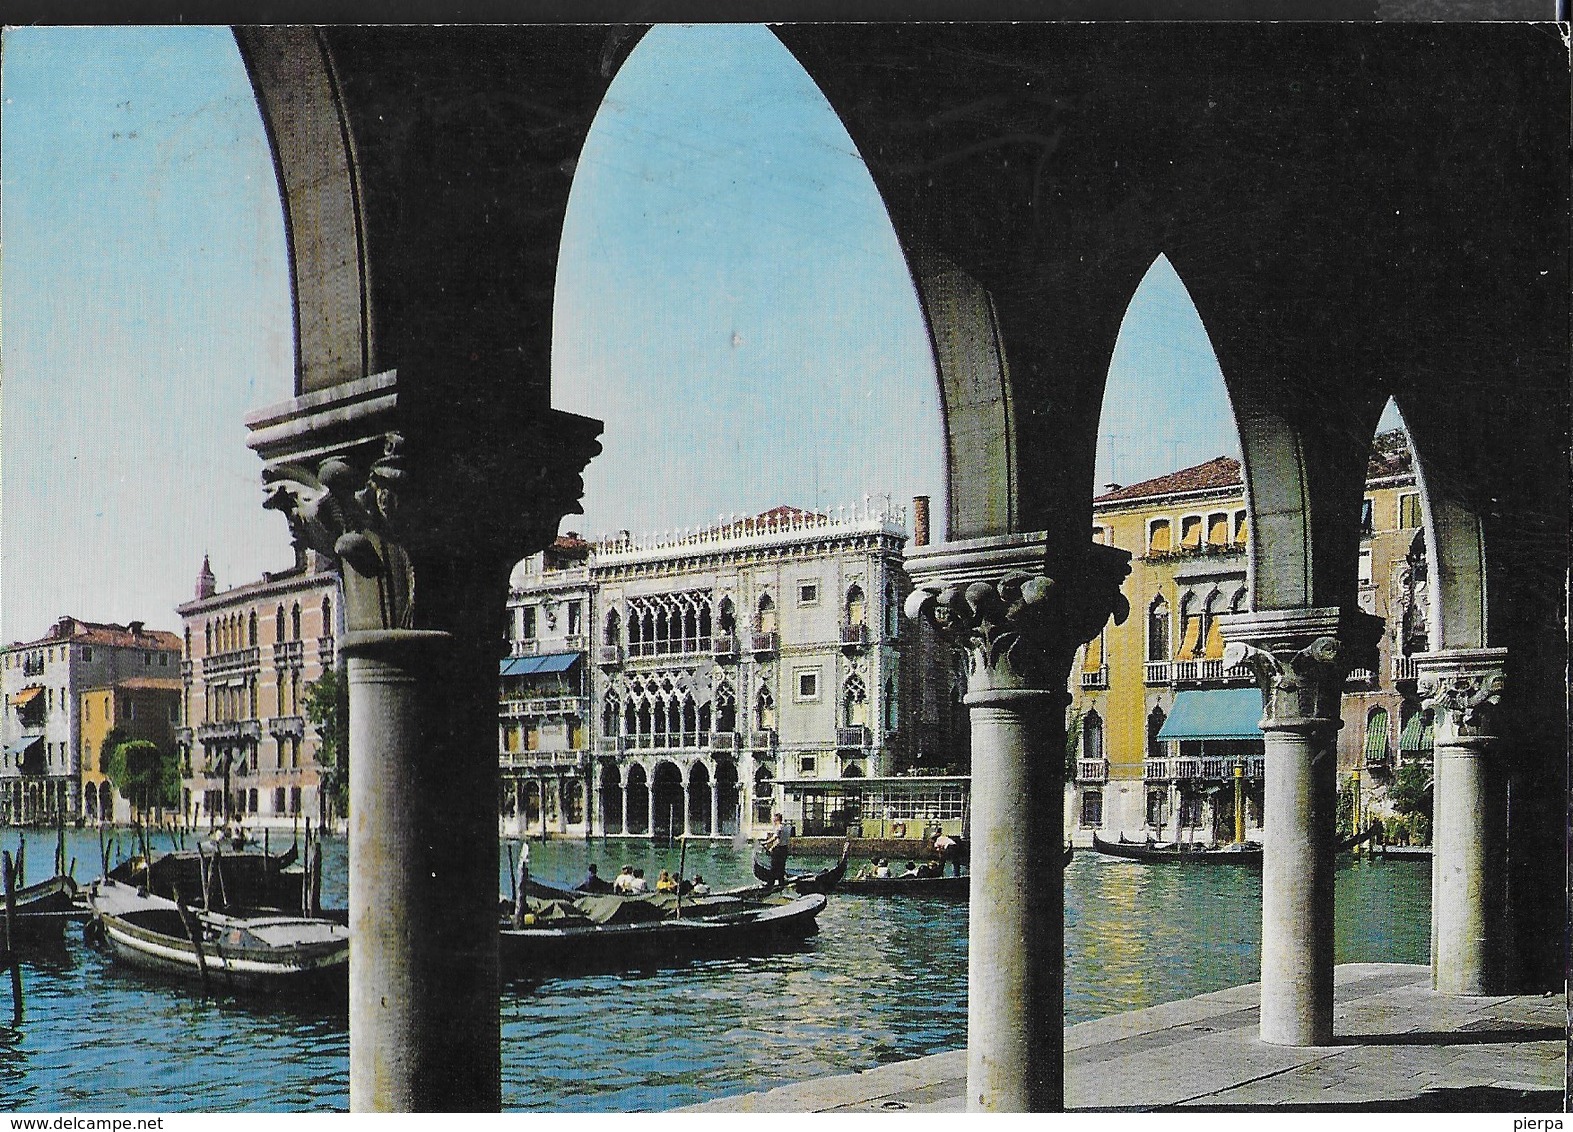 VENEZIA - CANAL GRANDE - CA' D'ORO - VIAGGIATA 1971 - Venezia (Venice)